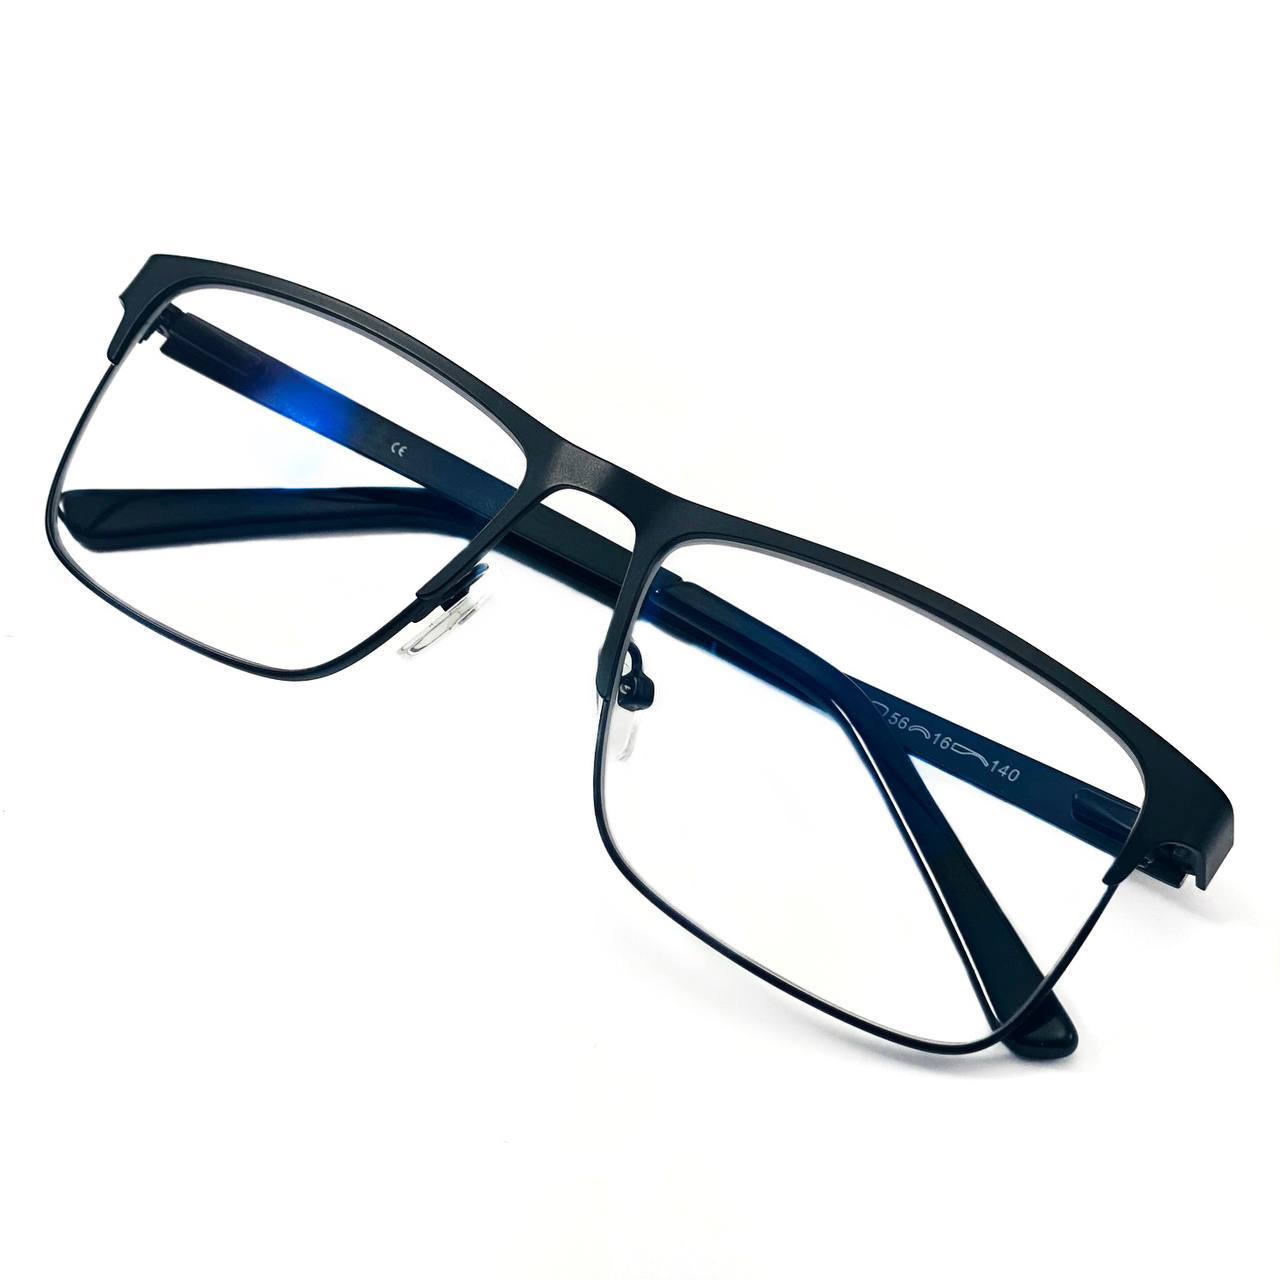 Солнцезащитные очки с отражающими стеклами - самый стильный аксессуар этого лета!